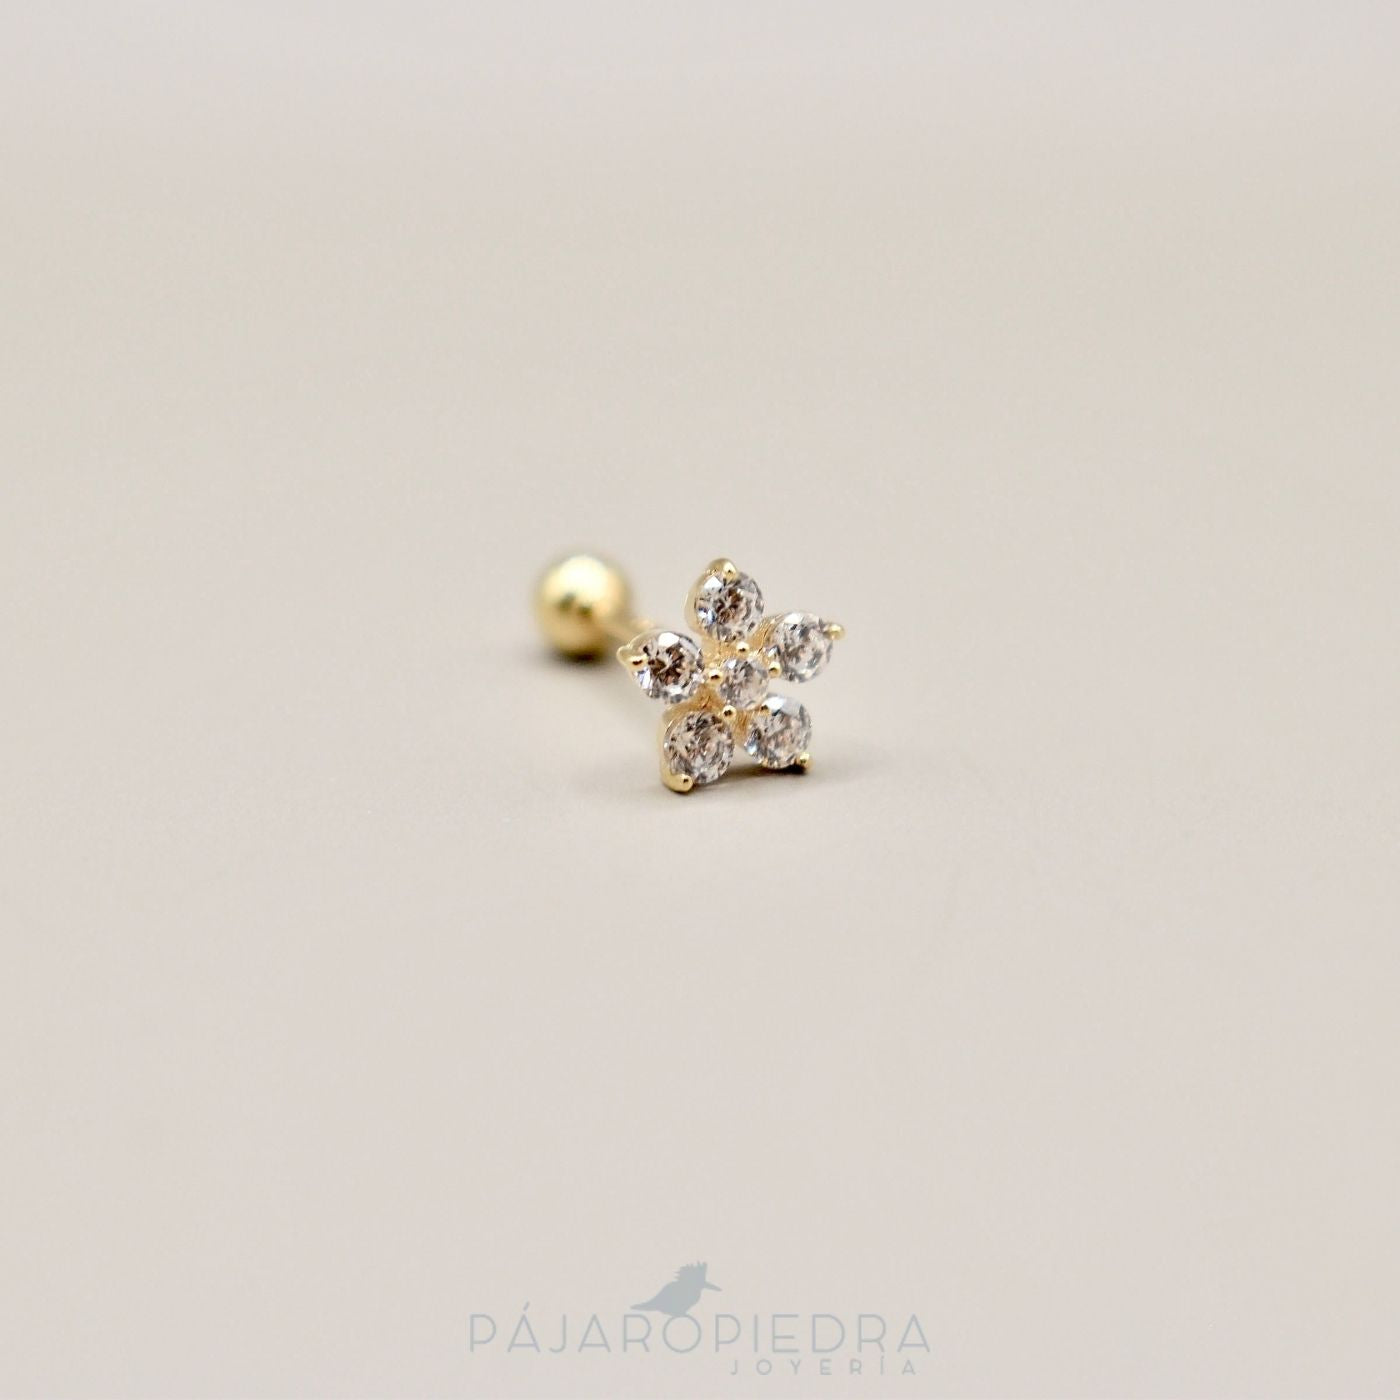 Piercing 14K Flor de mar (Fine Jewelry)